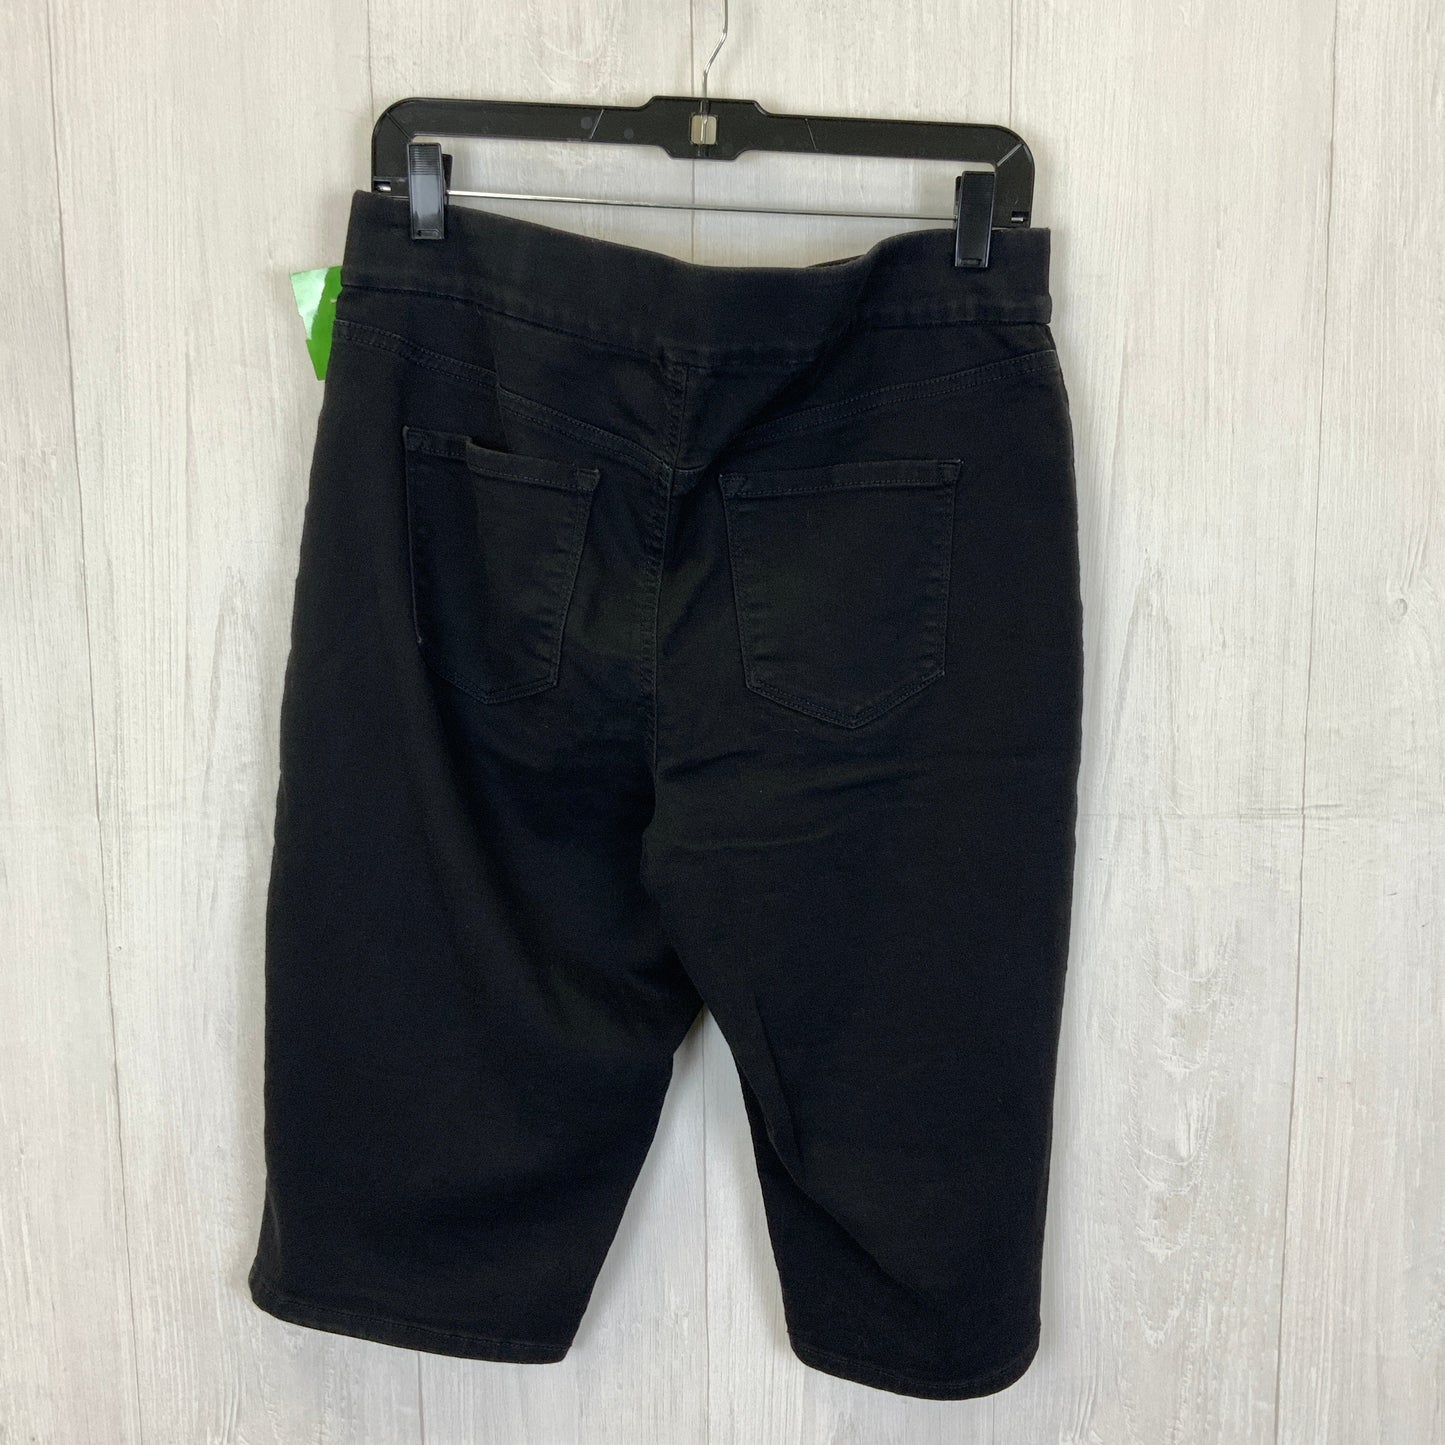 Black Shorts Nine West, Size 12